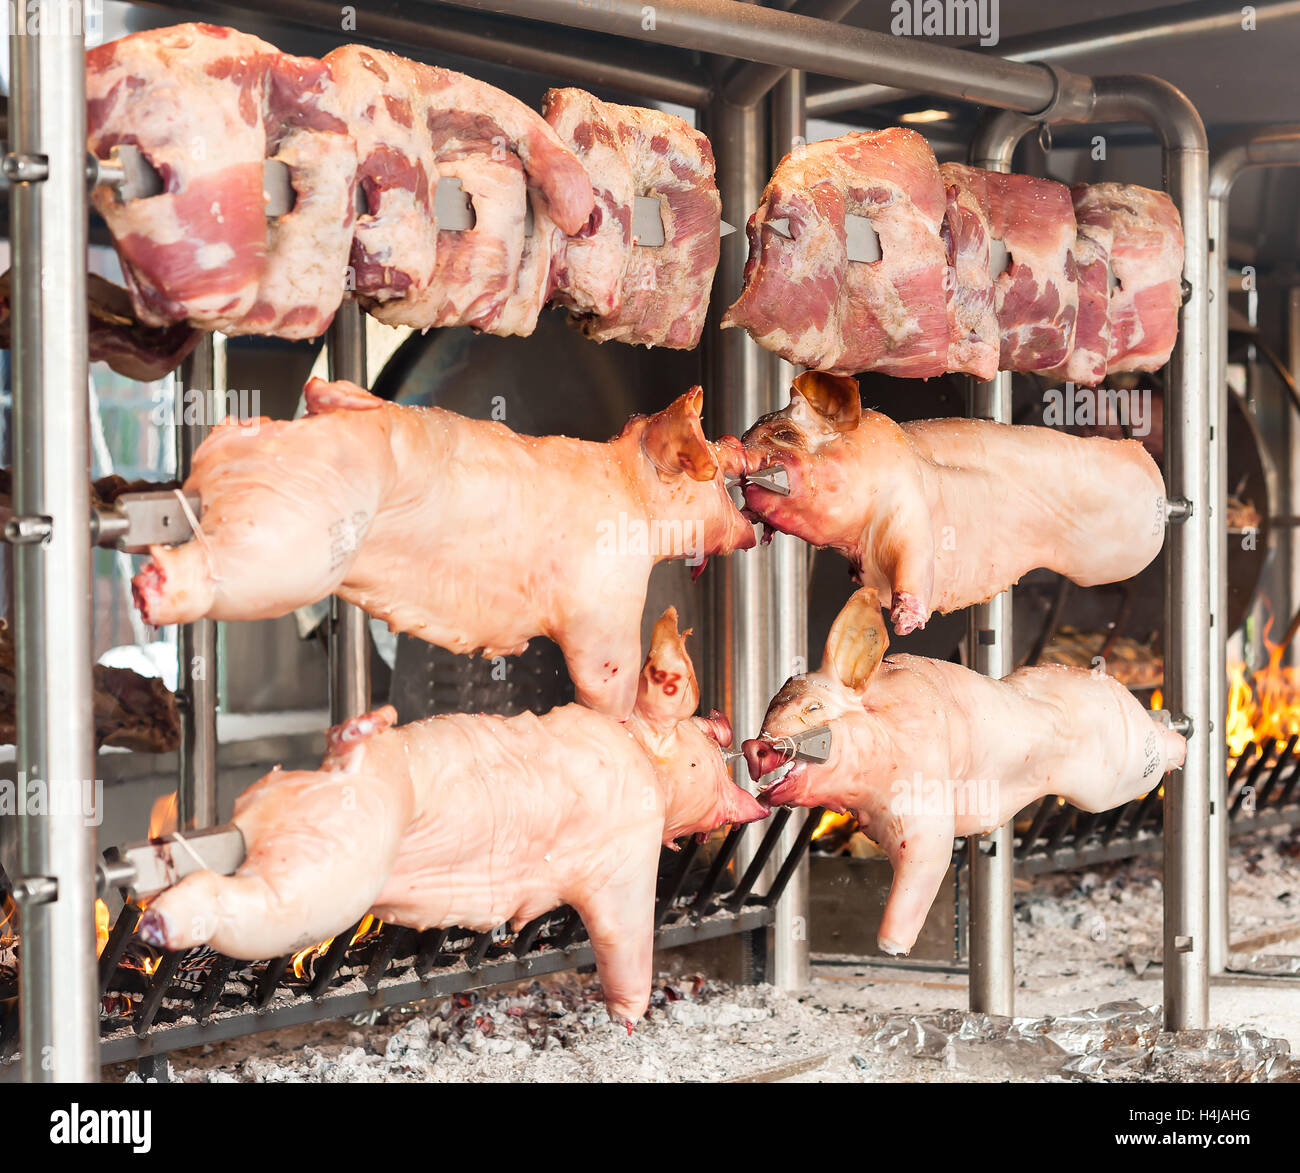 Schlachtkörper von Schweinefleisch und anderen Fleisch am Spieß zubereitet. Kochen am Grill und Feuer. Stockfoto